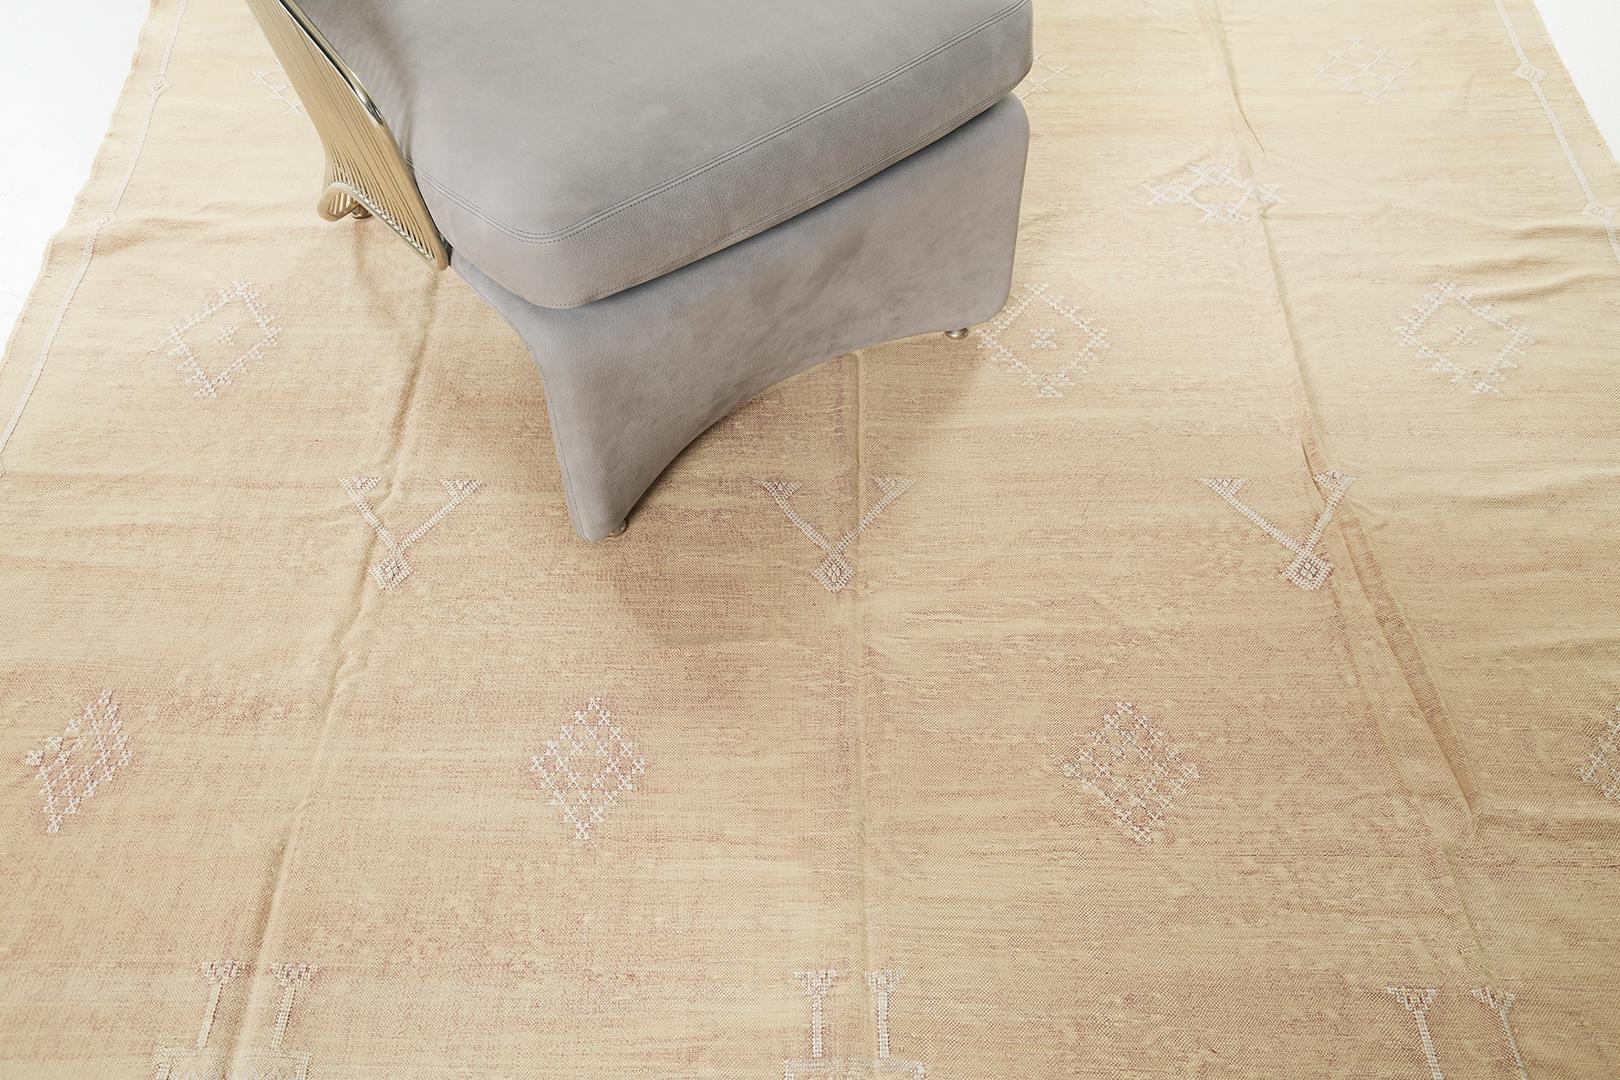 Mit seiner tadellosen und fesselnden Asymmetrie bietet dieser afrikanische Flachgewebe-Kilim-Teppich im Vintage-Stil ein optisch beeindruckendes Design. Dieser raffinierte Teppich in Mandarine zeigt brillante, mehrdeutige Muster mit marokkanischen